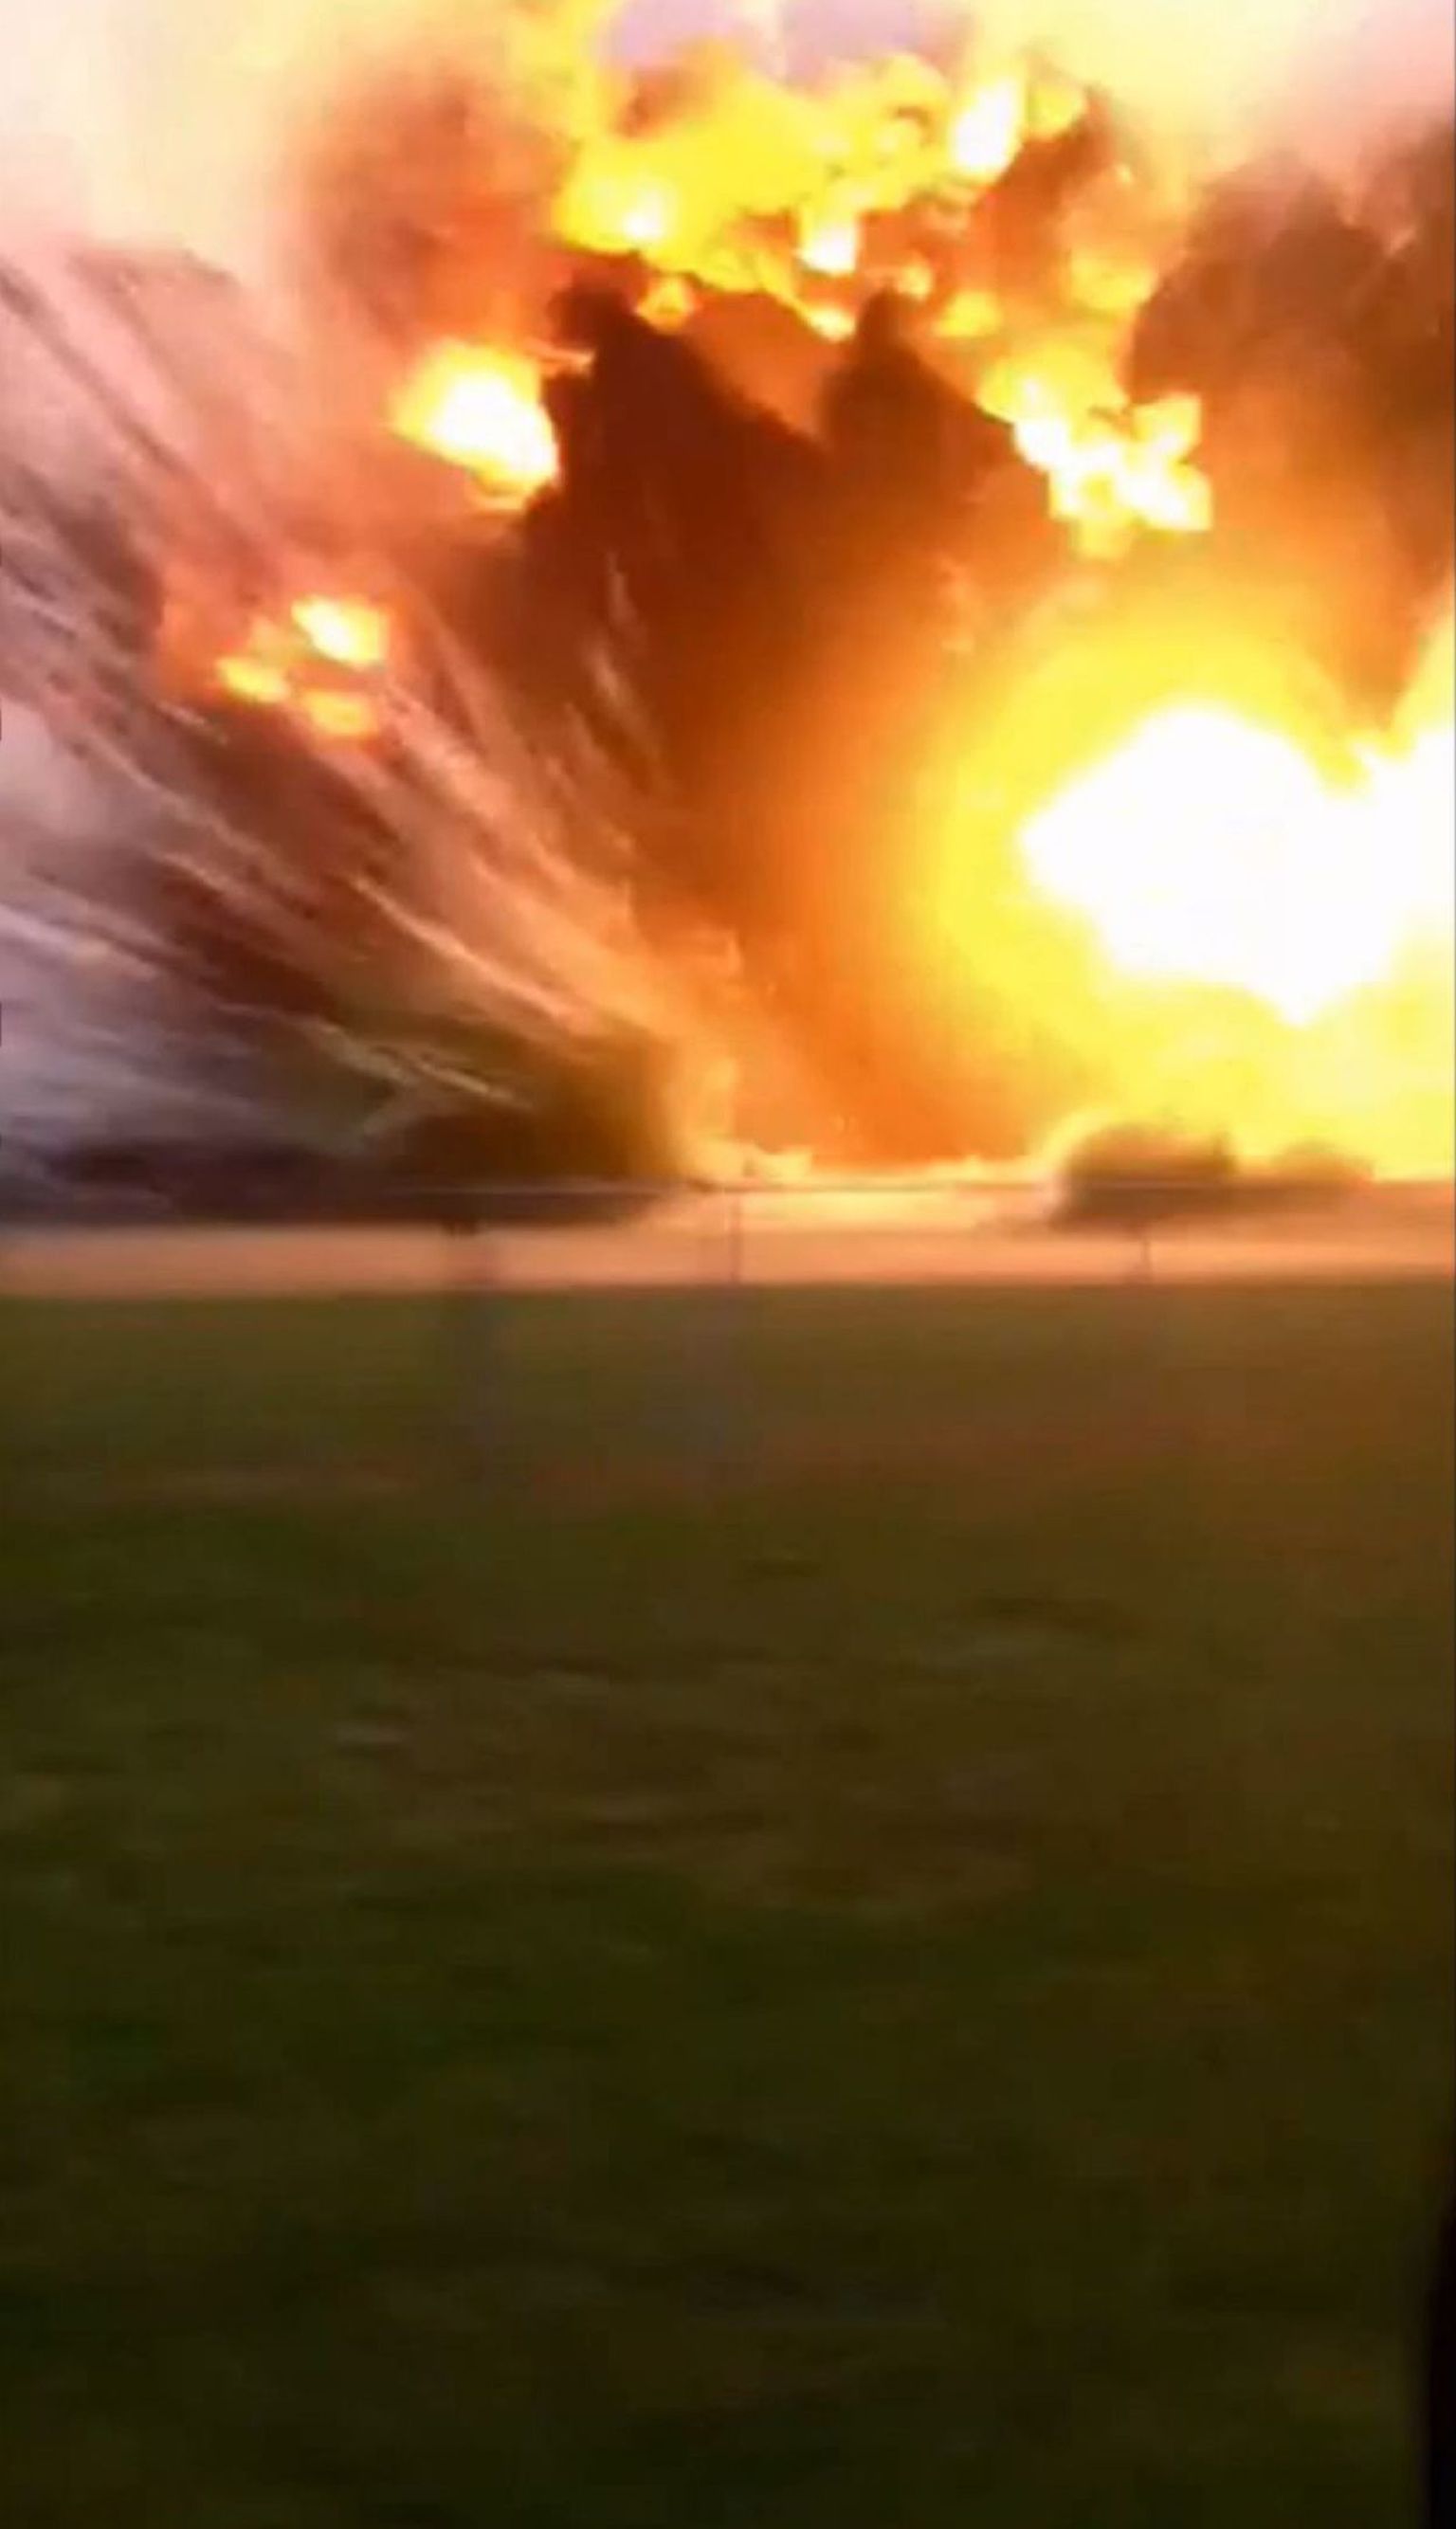 Aamatöörvideo kaader Texase Westi väetisetehase plahvatusest